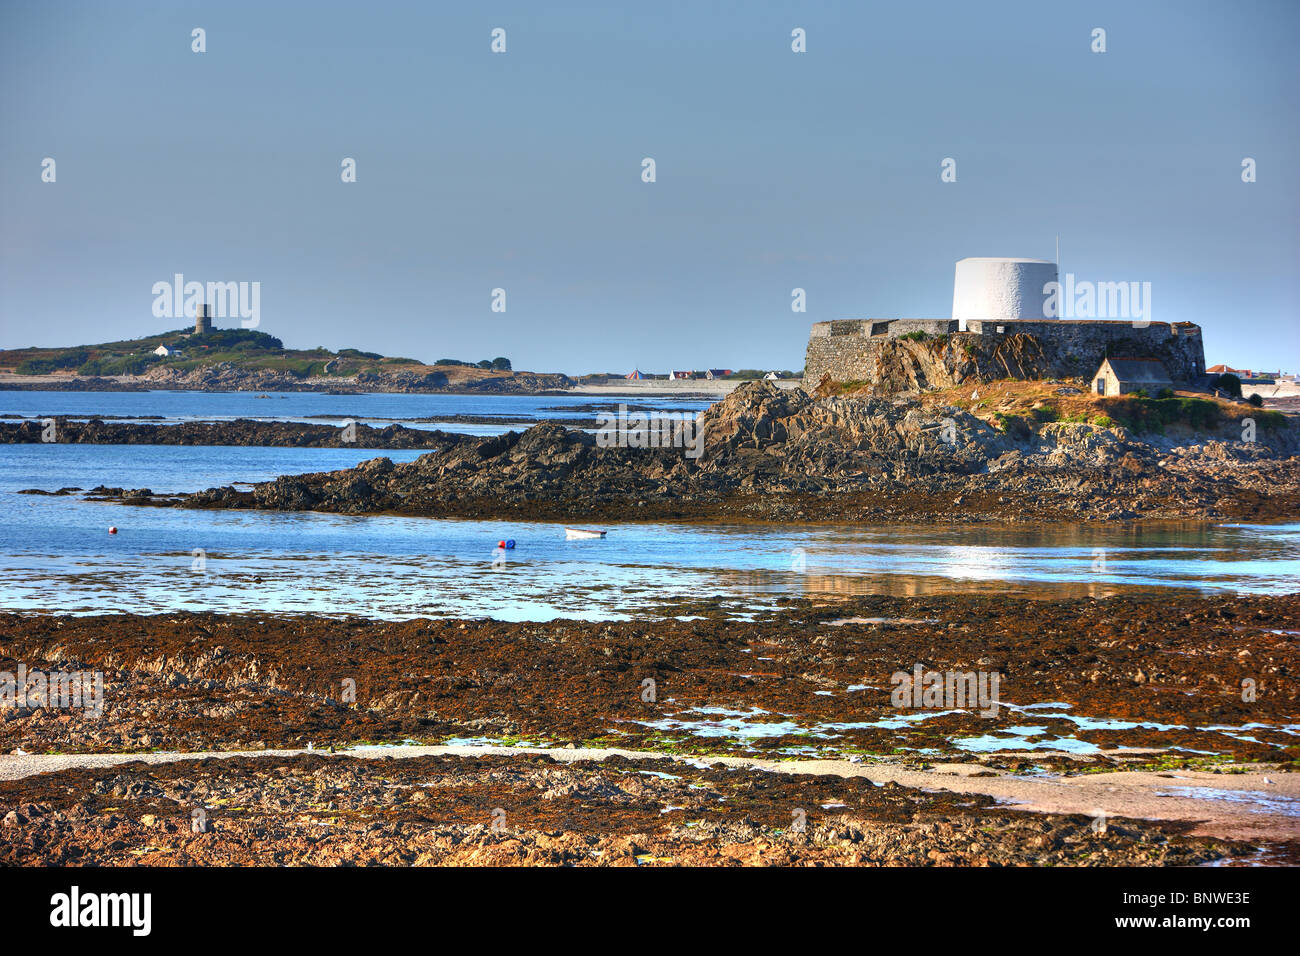 Nord Ost Küste von Guernsey, Kanalinseln im Ärmelkanal bei Ebbe. Typische Festung erhebt sich an der Küste. Stockfoto